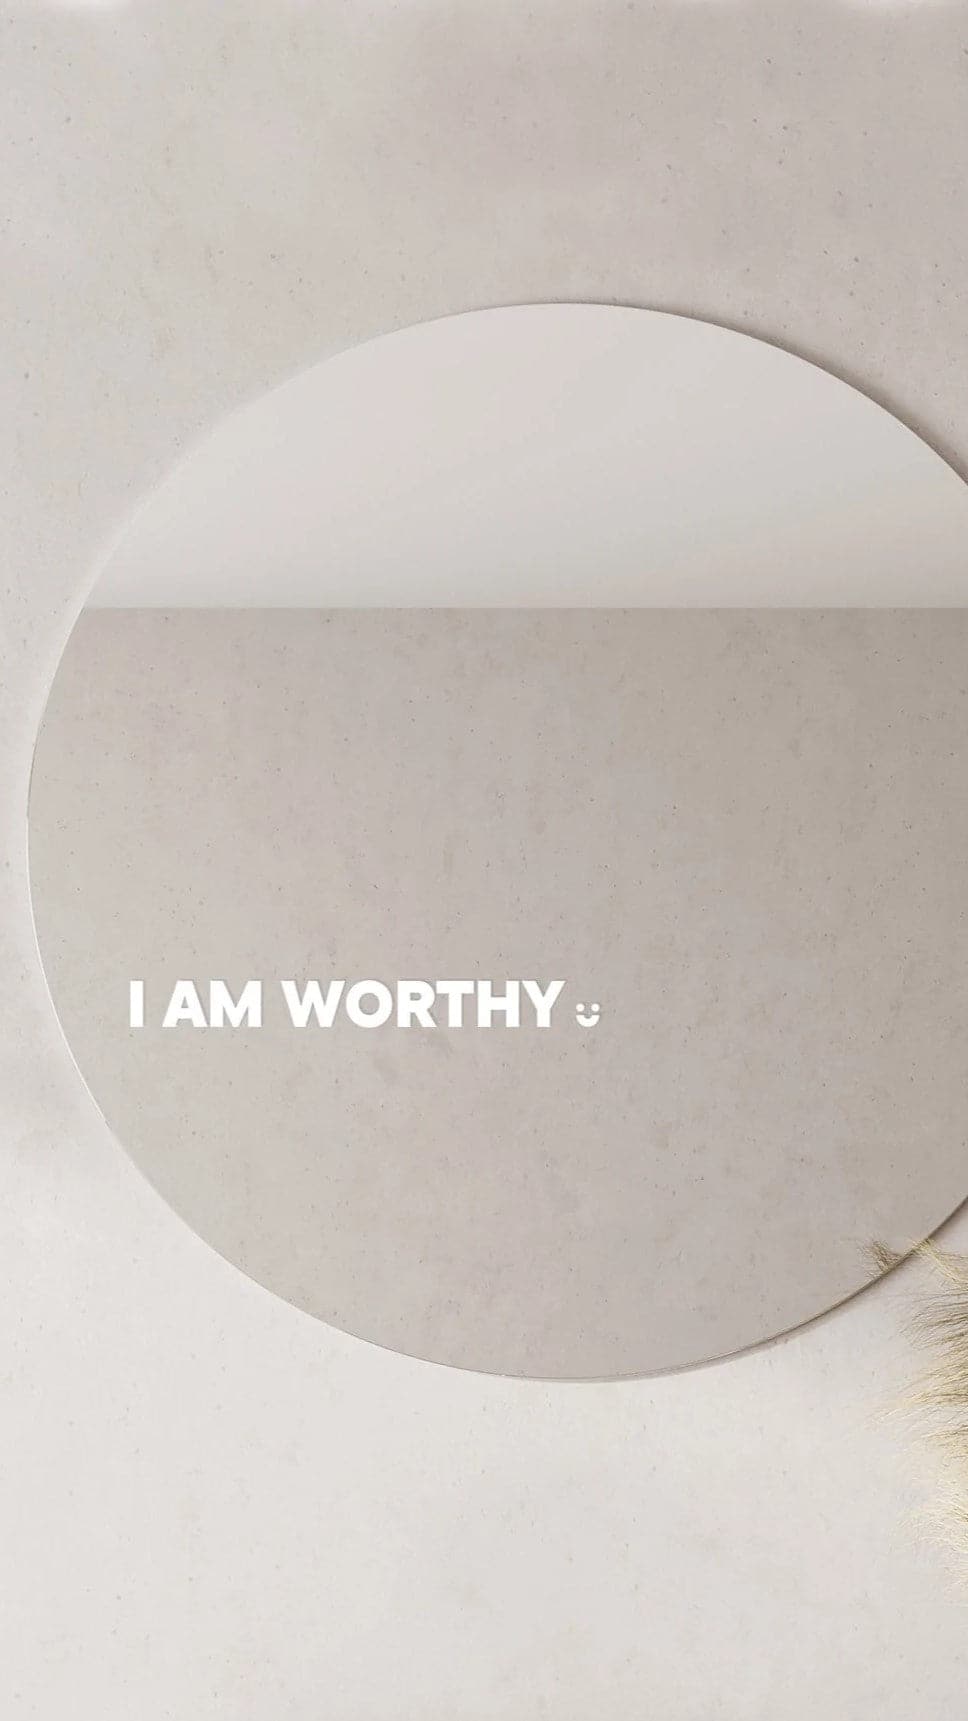 I Am Worthy - Affirmation Mirror Sticker - Billy J